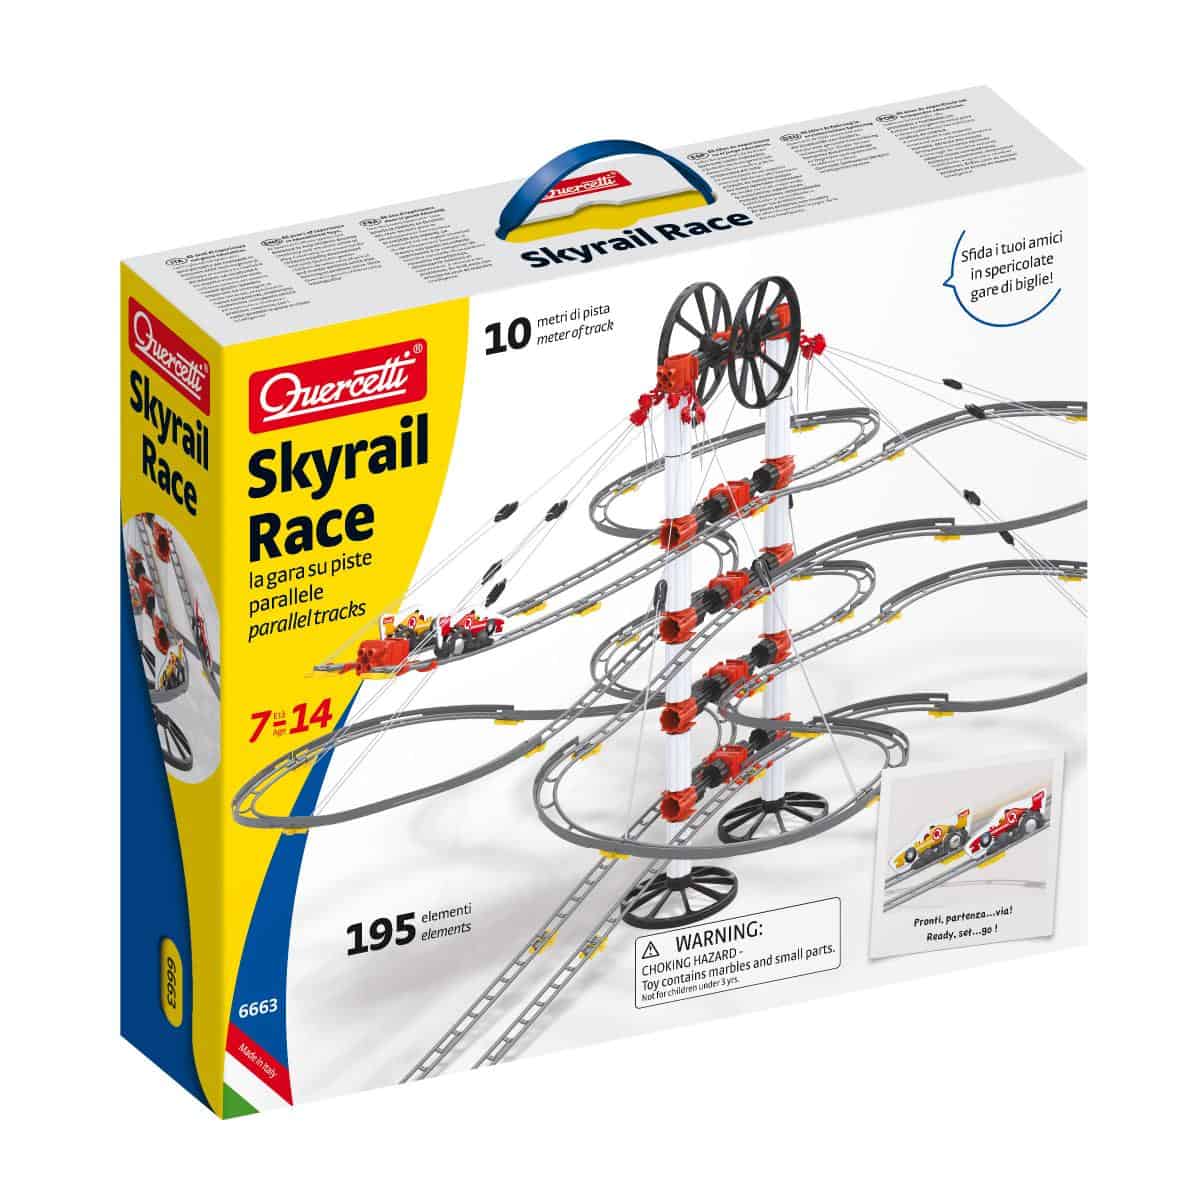 Skyrail Race Quercetti, per sfidare gli amici in spericolate gare di biglie!